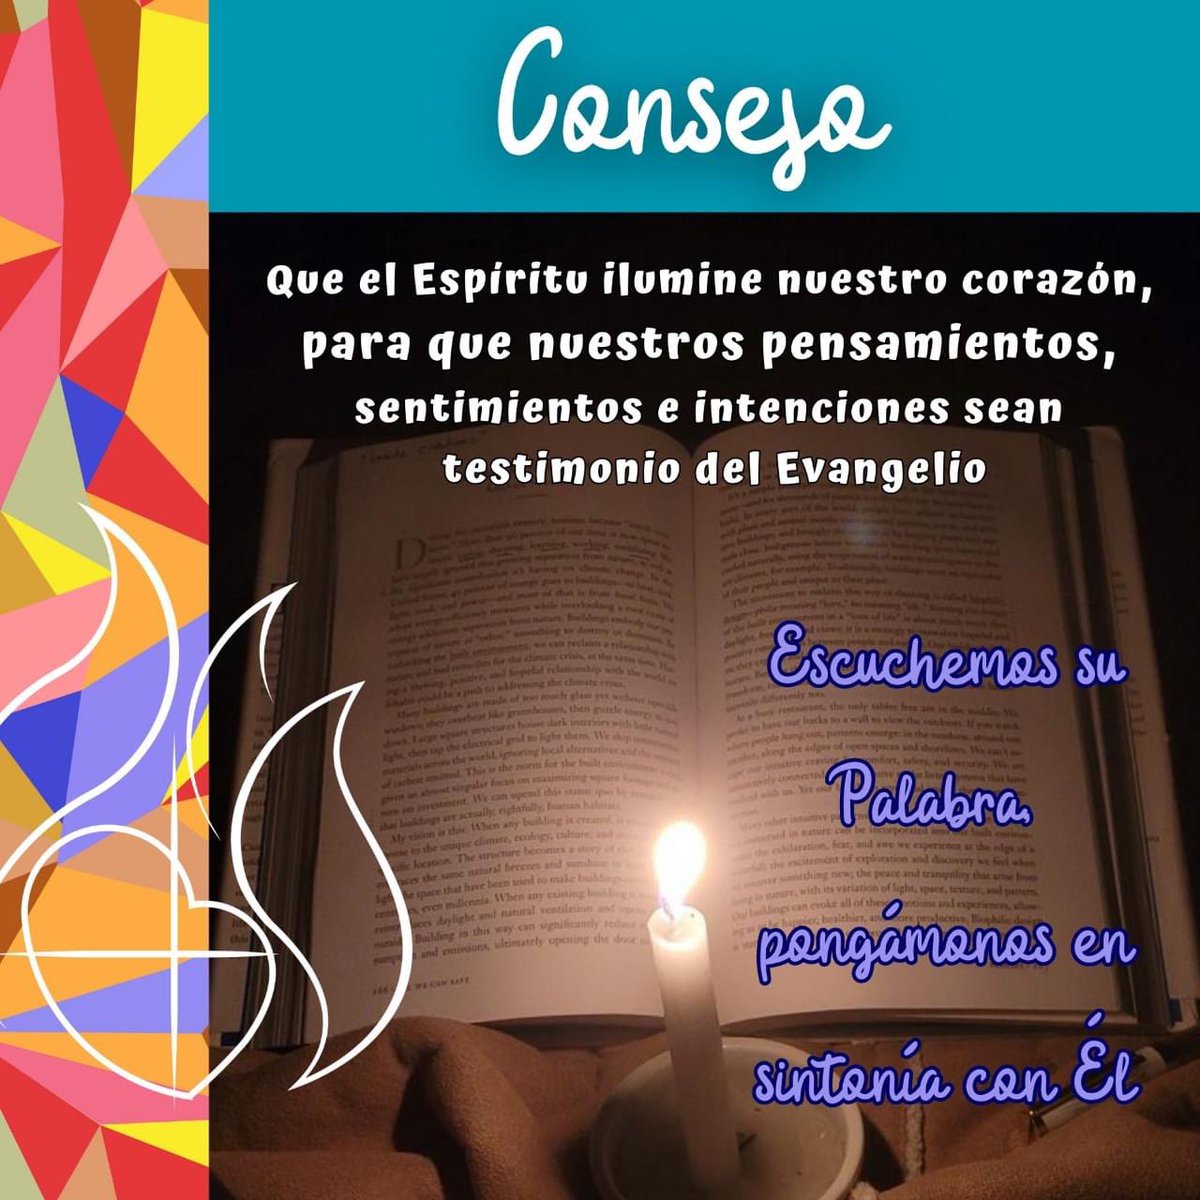 🕊️ Quedan 4 días para #Pentecostés ❤️

#EducaciónVicenciana #ColegiosHHCC #ConstruimosSueñosDePaz
#SVPHuelva #ColegioSanVicentedePaúlHuelva